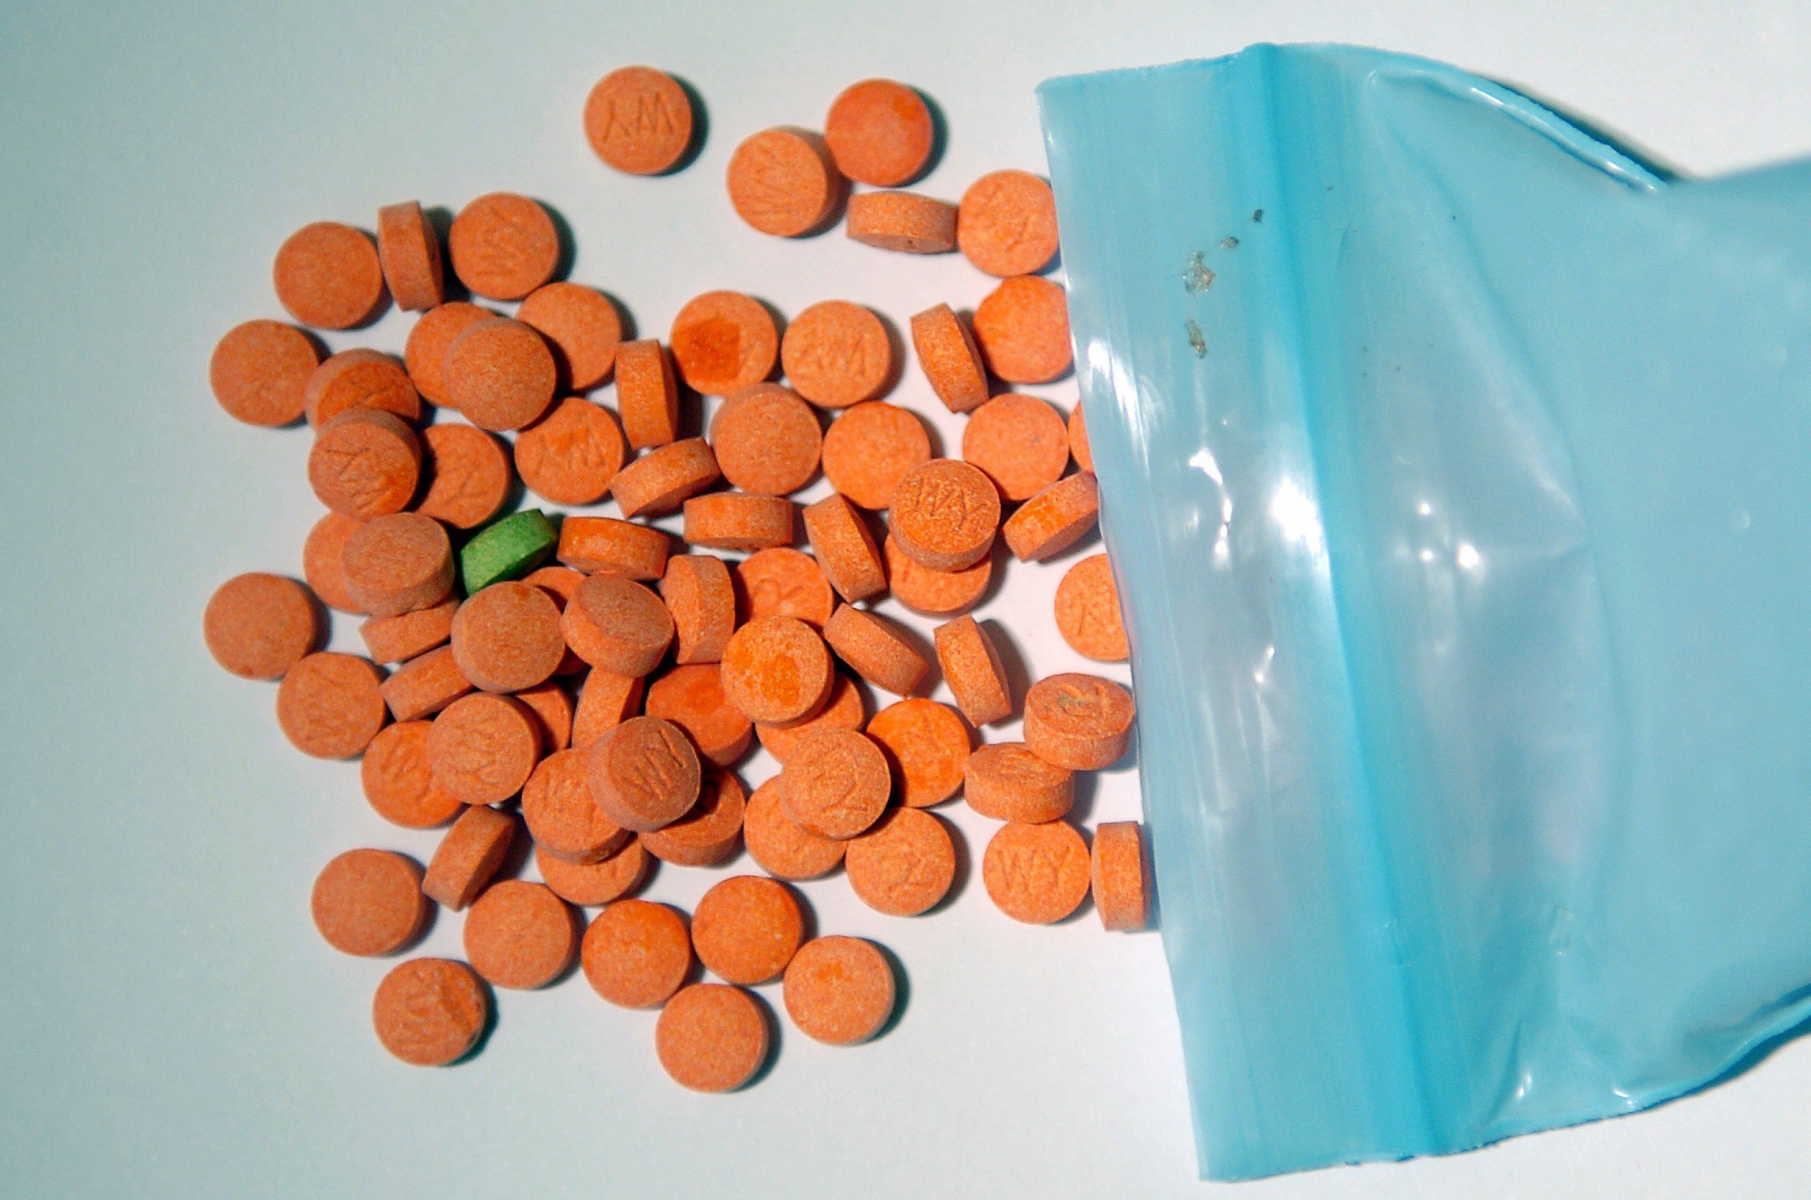 En une année, ce sont plusieurs kilos de drogues qui ont été saisis par la police bernoise, rien que dans le Jura bernois. Ici, des pilules thaïes.